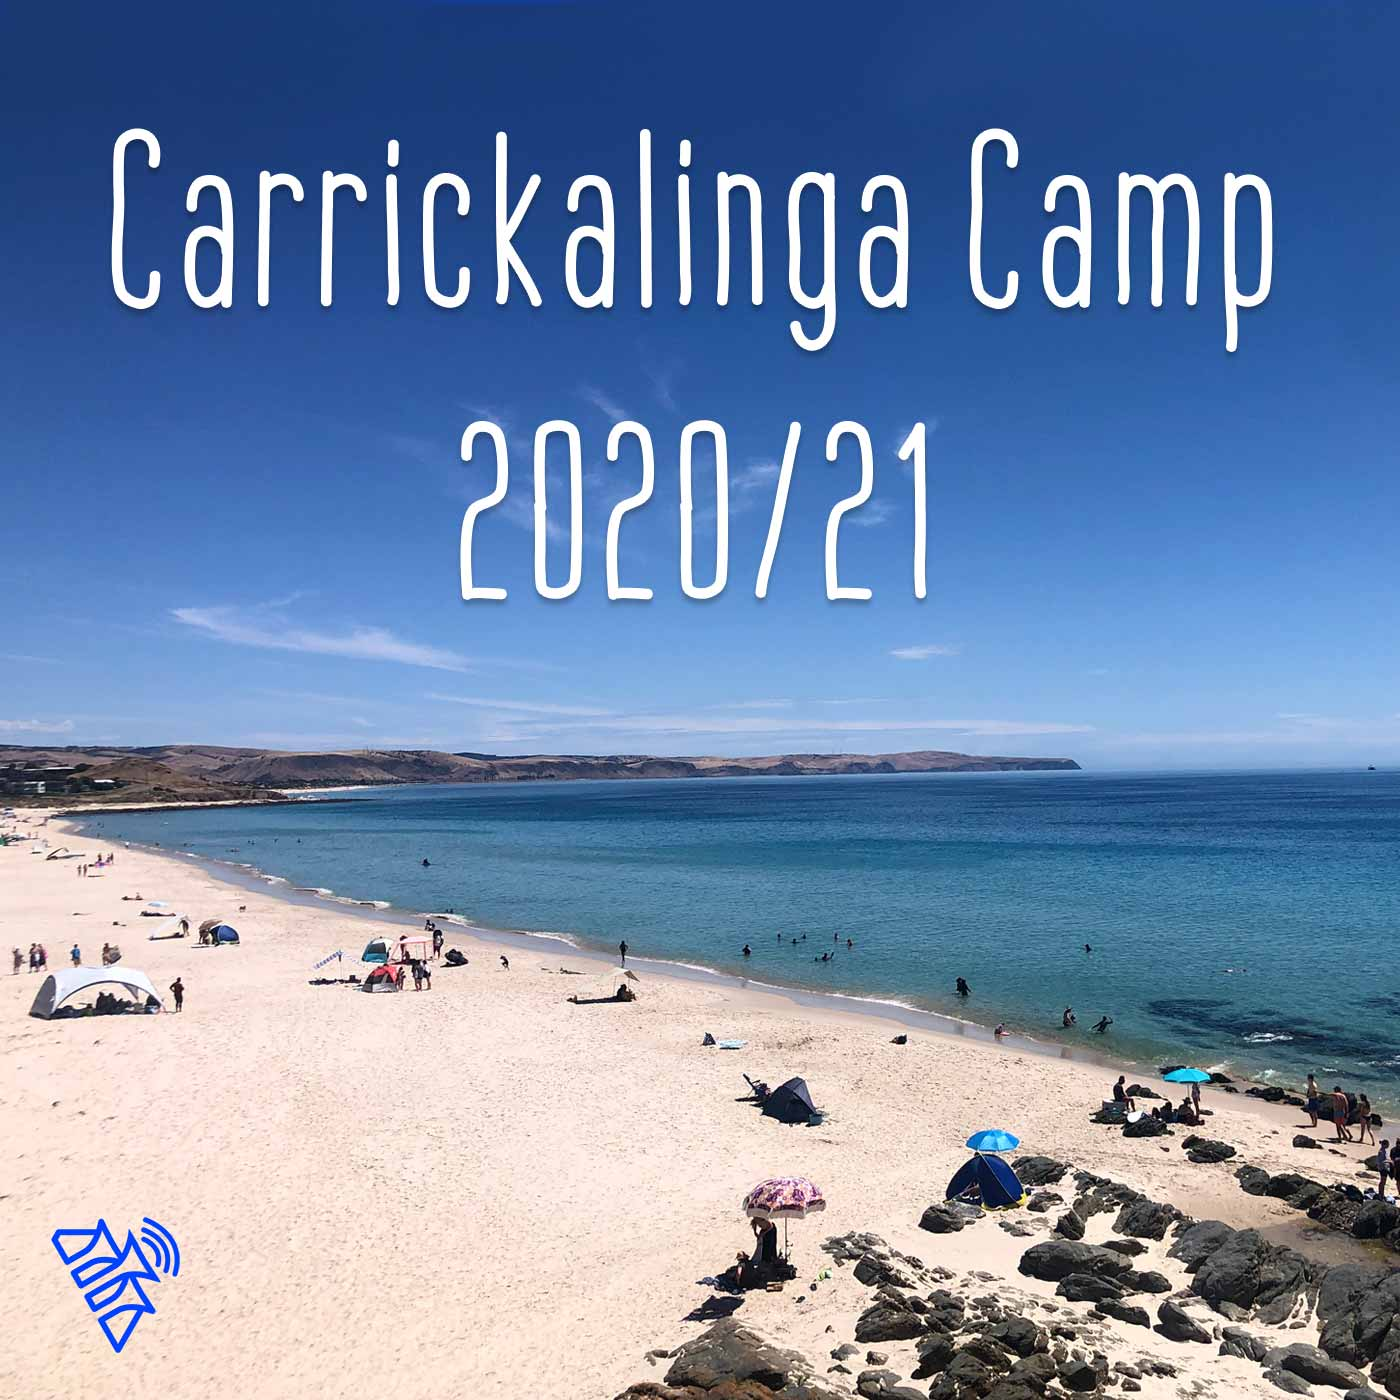 The need for human contact (Carrickalinga Camp Dec 2020)